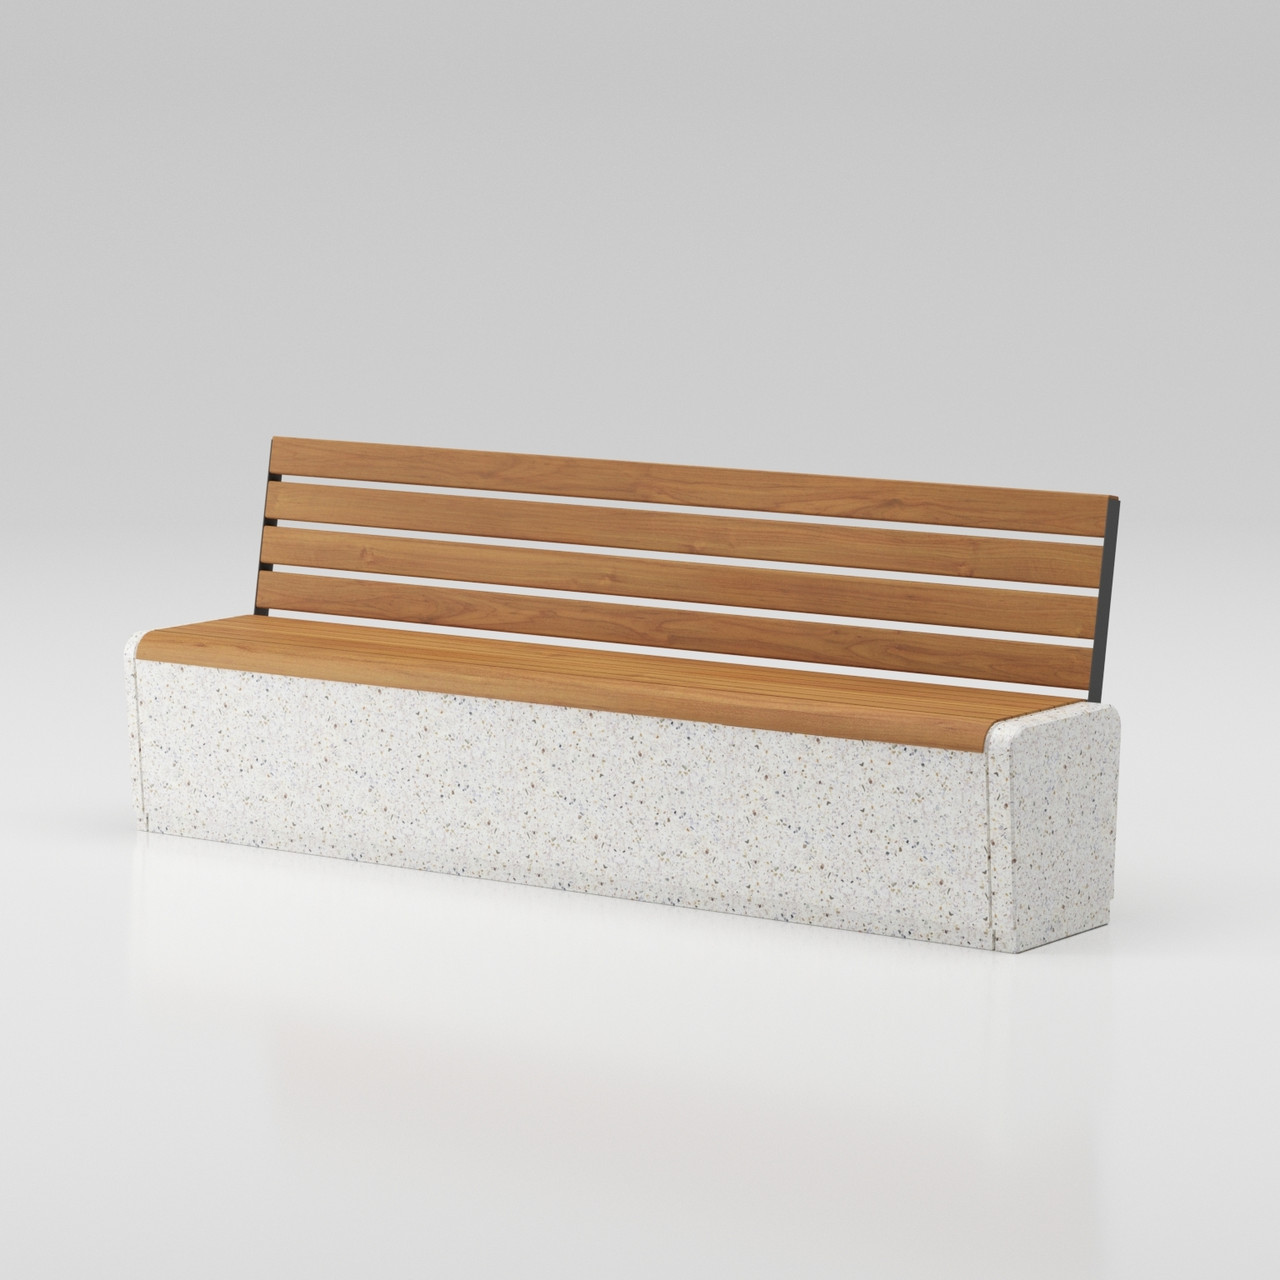 Скамейка из композитного мраморного камня с деревянным настилом Onda bench C3 со спинкой